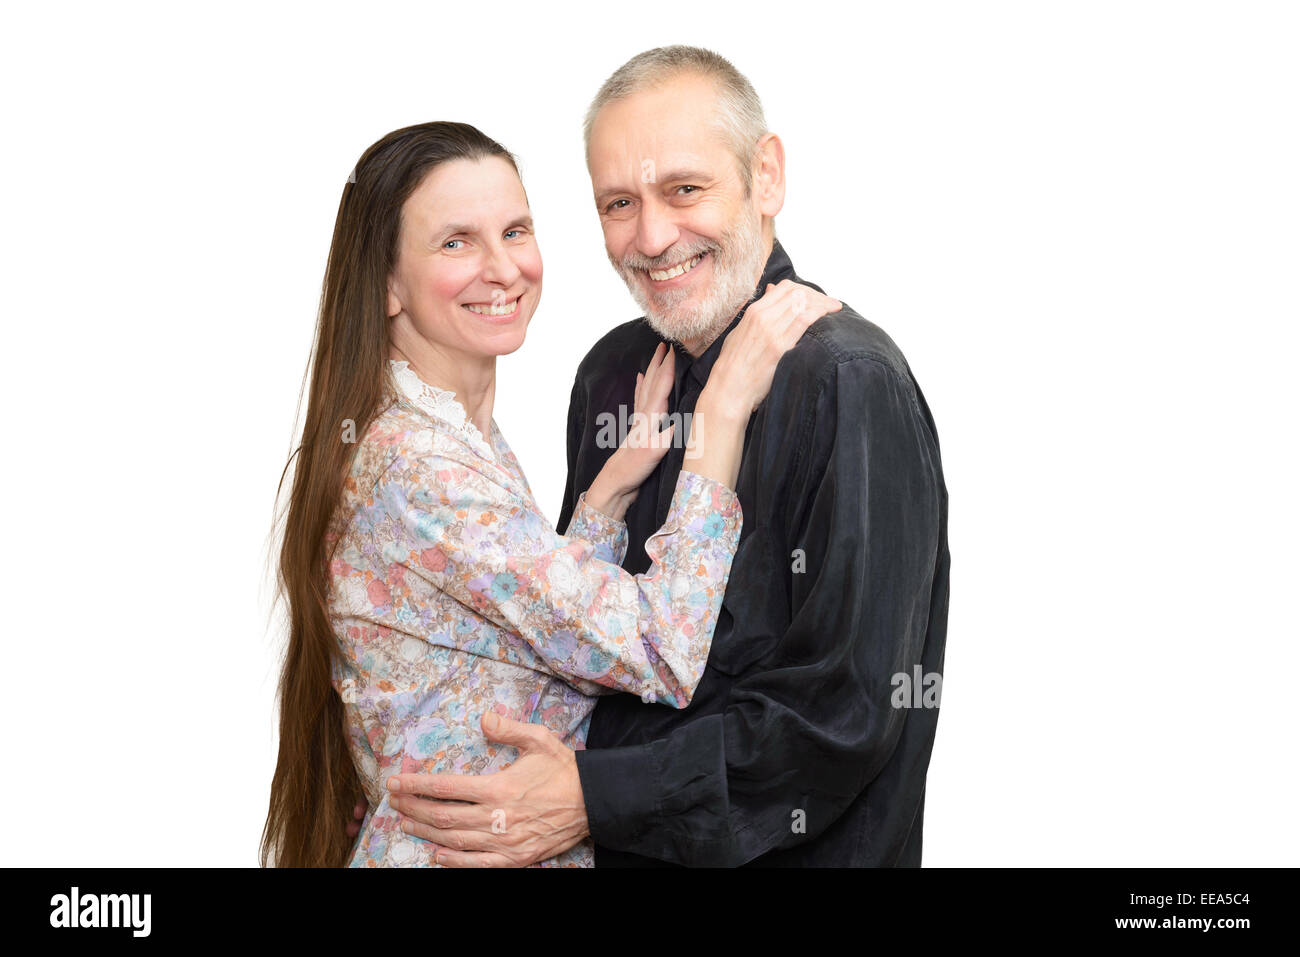 Glücklich reifer Mann und Frau mit langem Haar Lächeln für S. Valentin Tag oder ein Jubiläum. Isoliert auf weißem Hintergrund. Stockfoto